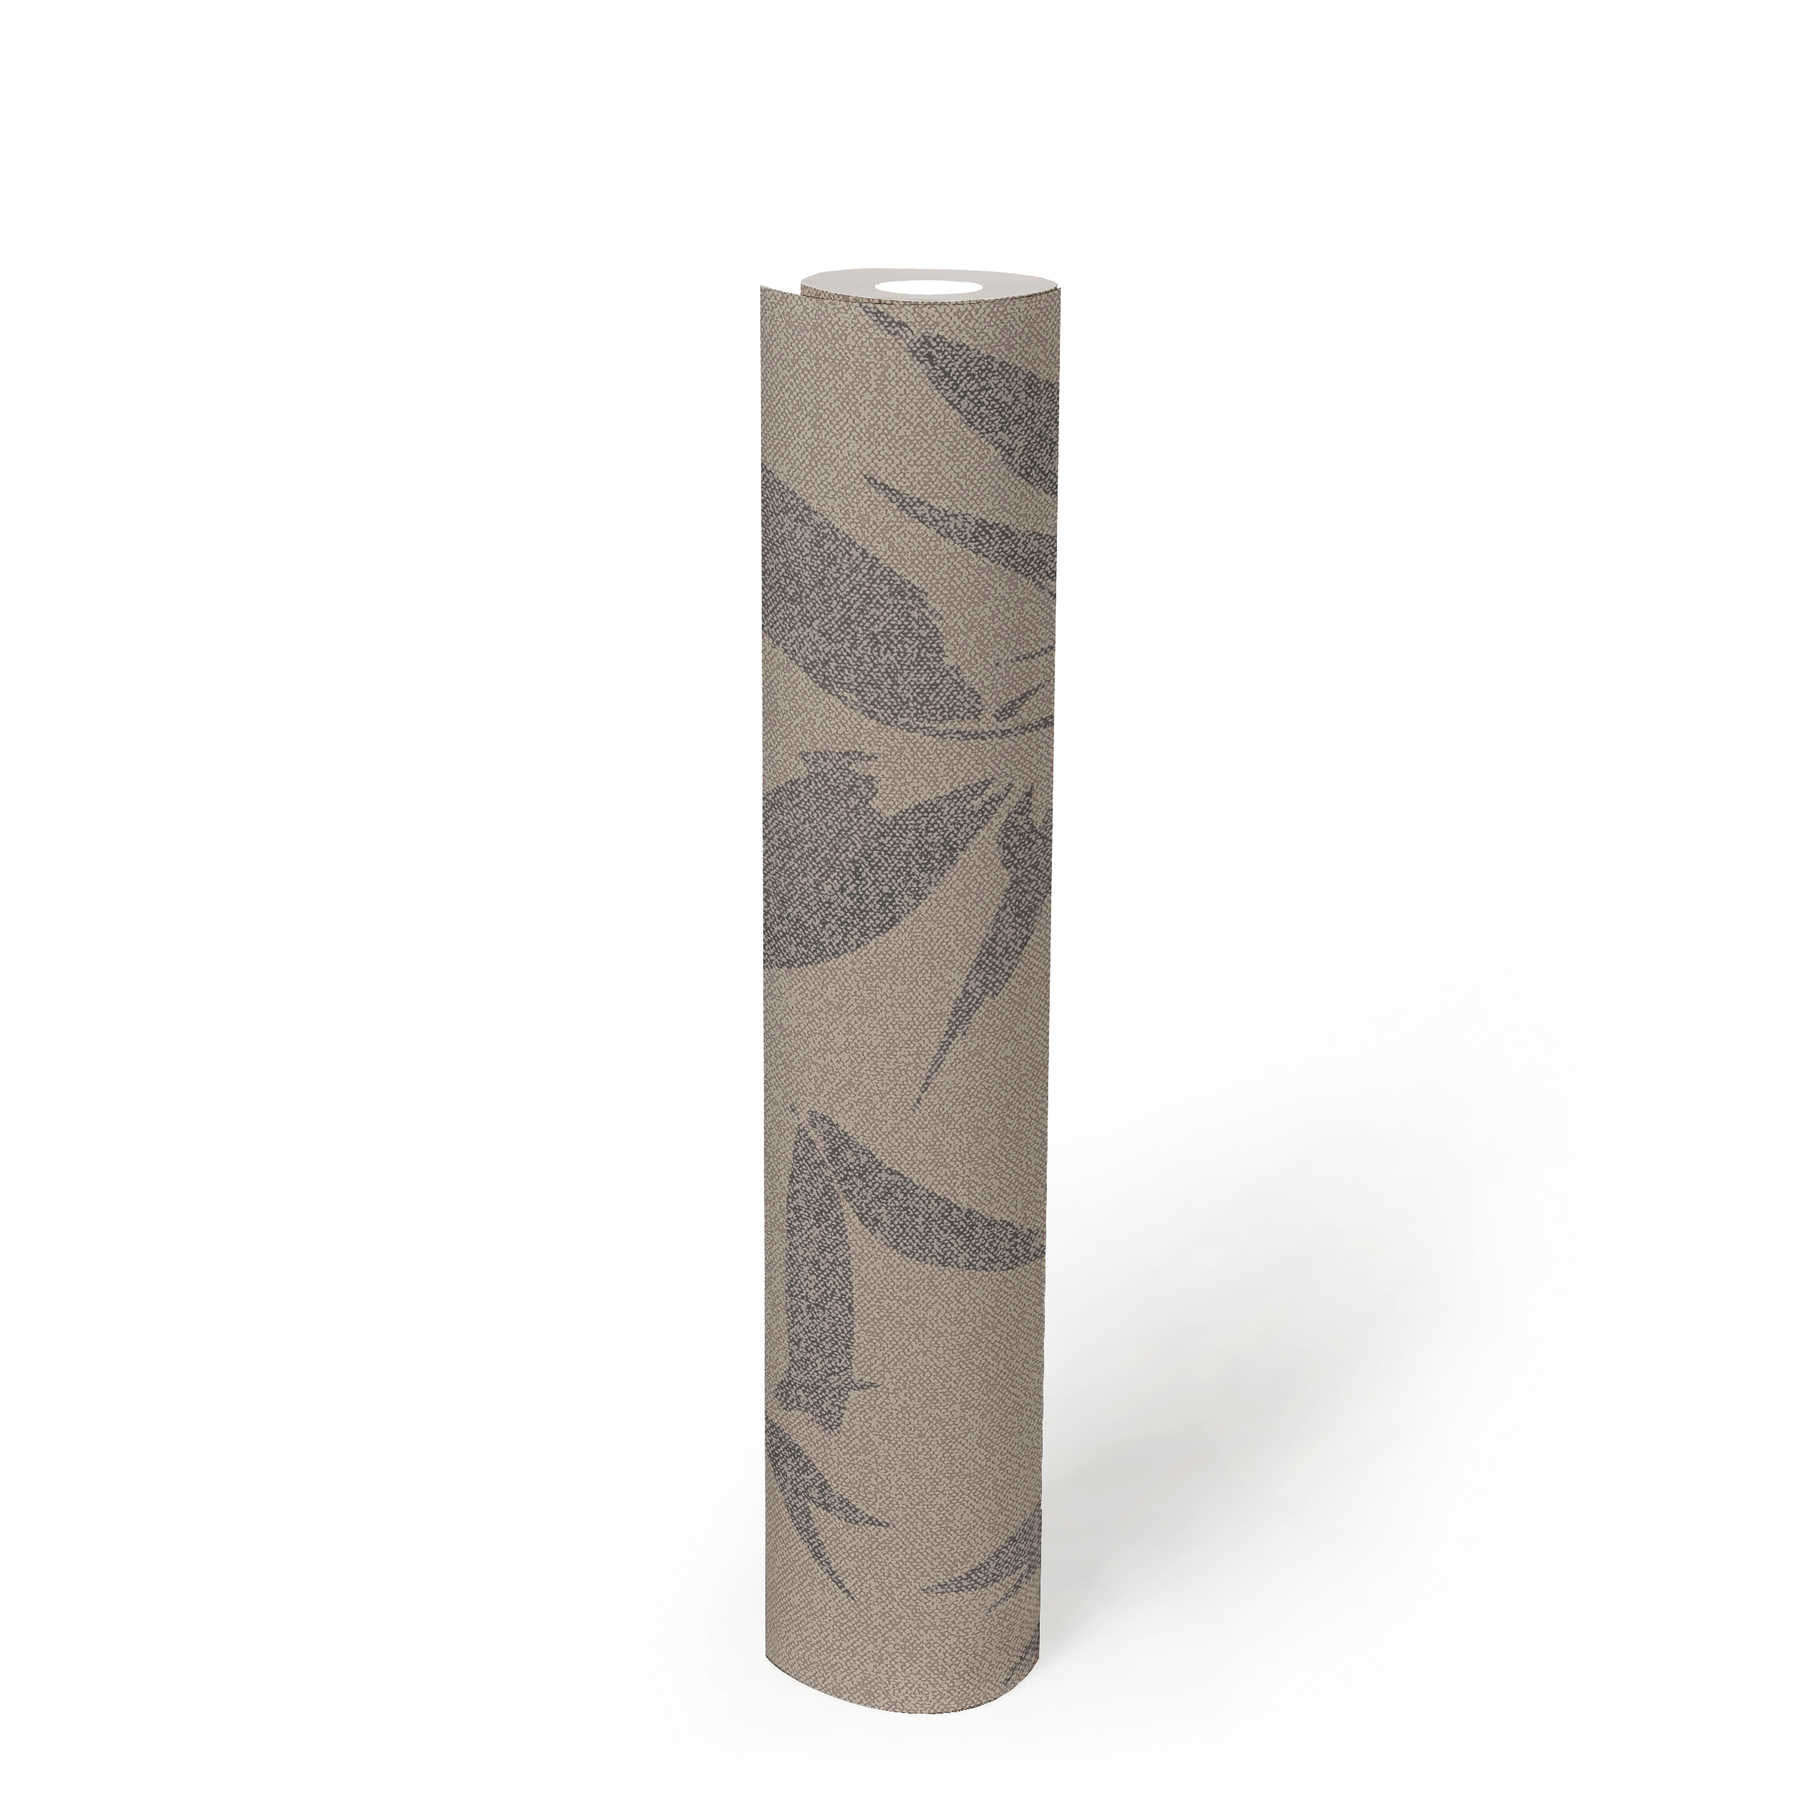             Papier peint intissé motif feuilles abstrait, aspect textile - marron, beige
        